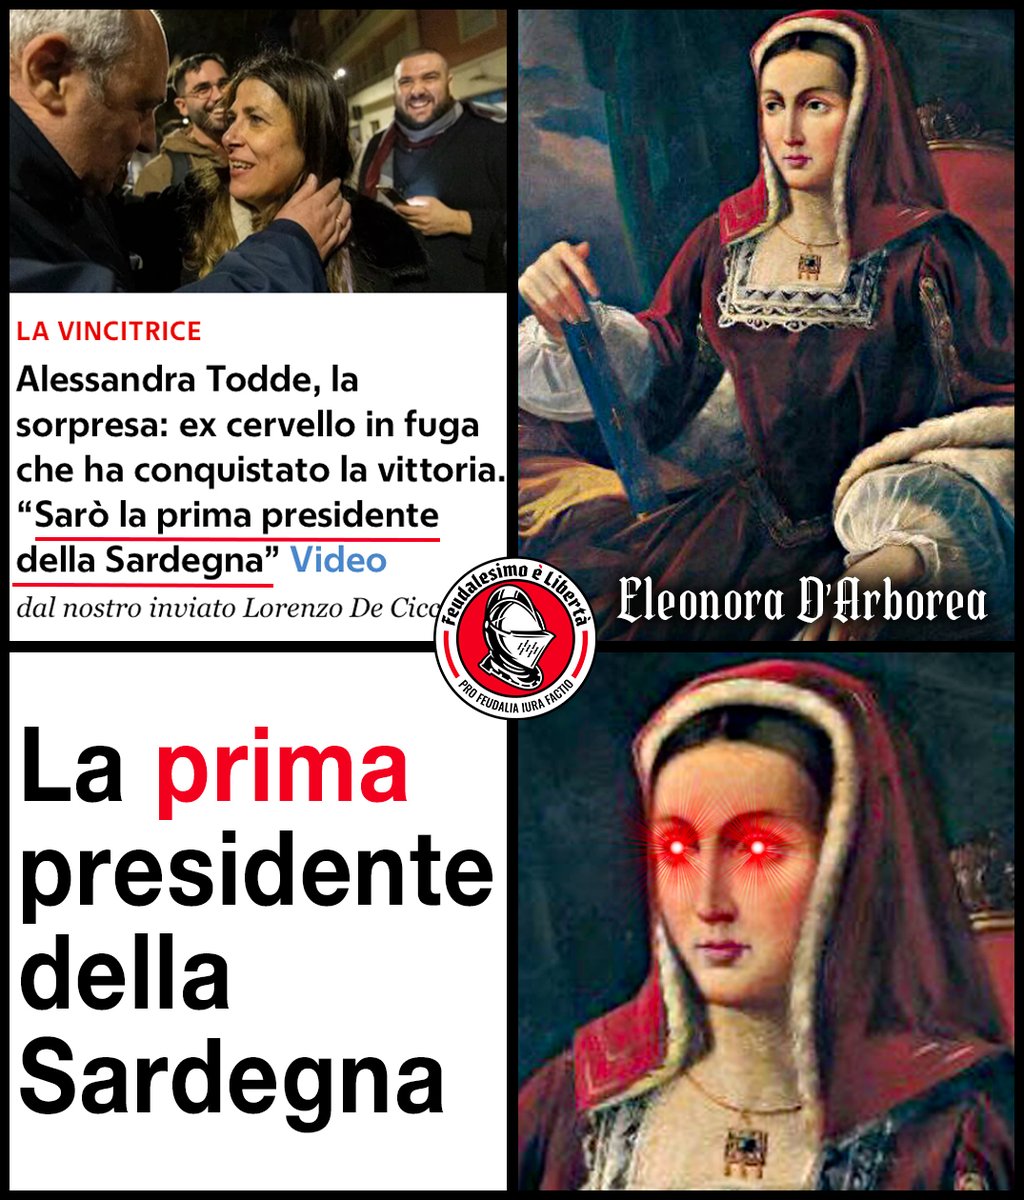 Giudicessa > Presidente Femmineo Potere fin dallo XIV secolo! #Sardegna2024 #Truzzu #Todde #Cagliari #Meloni #27Febbraio